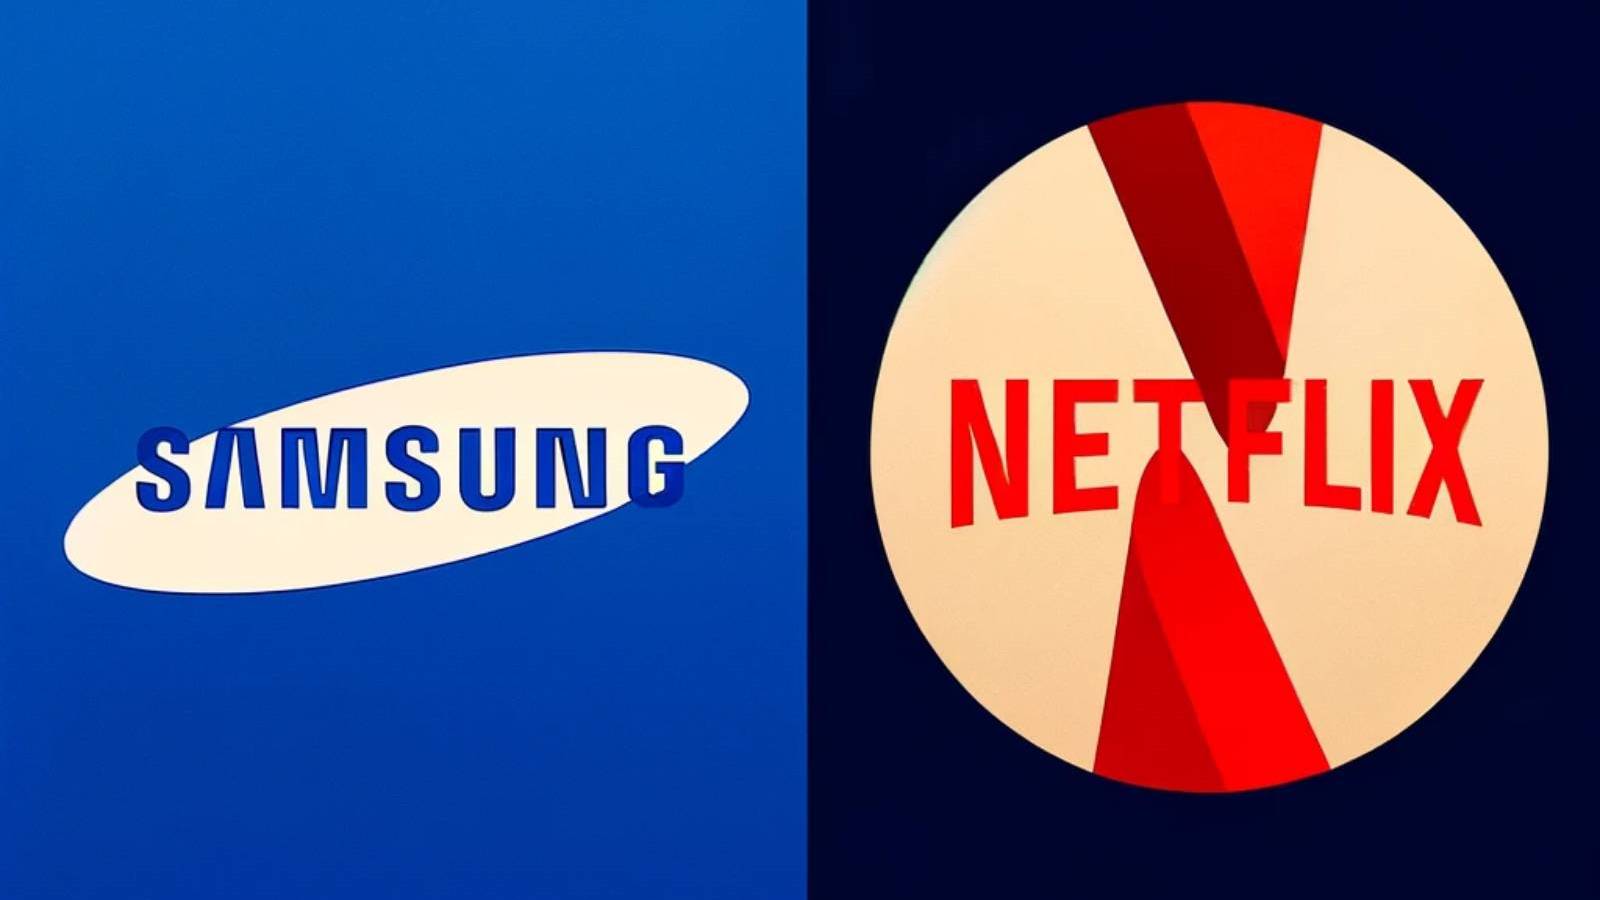 Samsungs viktiga meddelande med Netflix, vilket beslut företagen tog